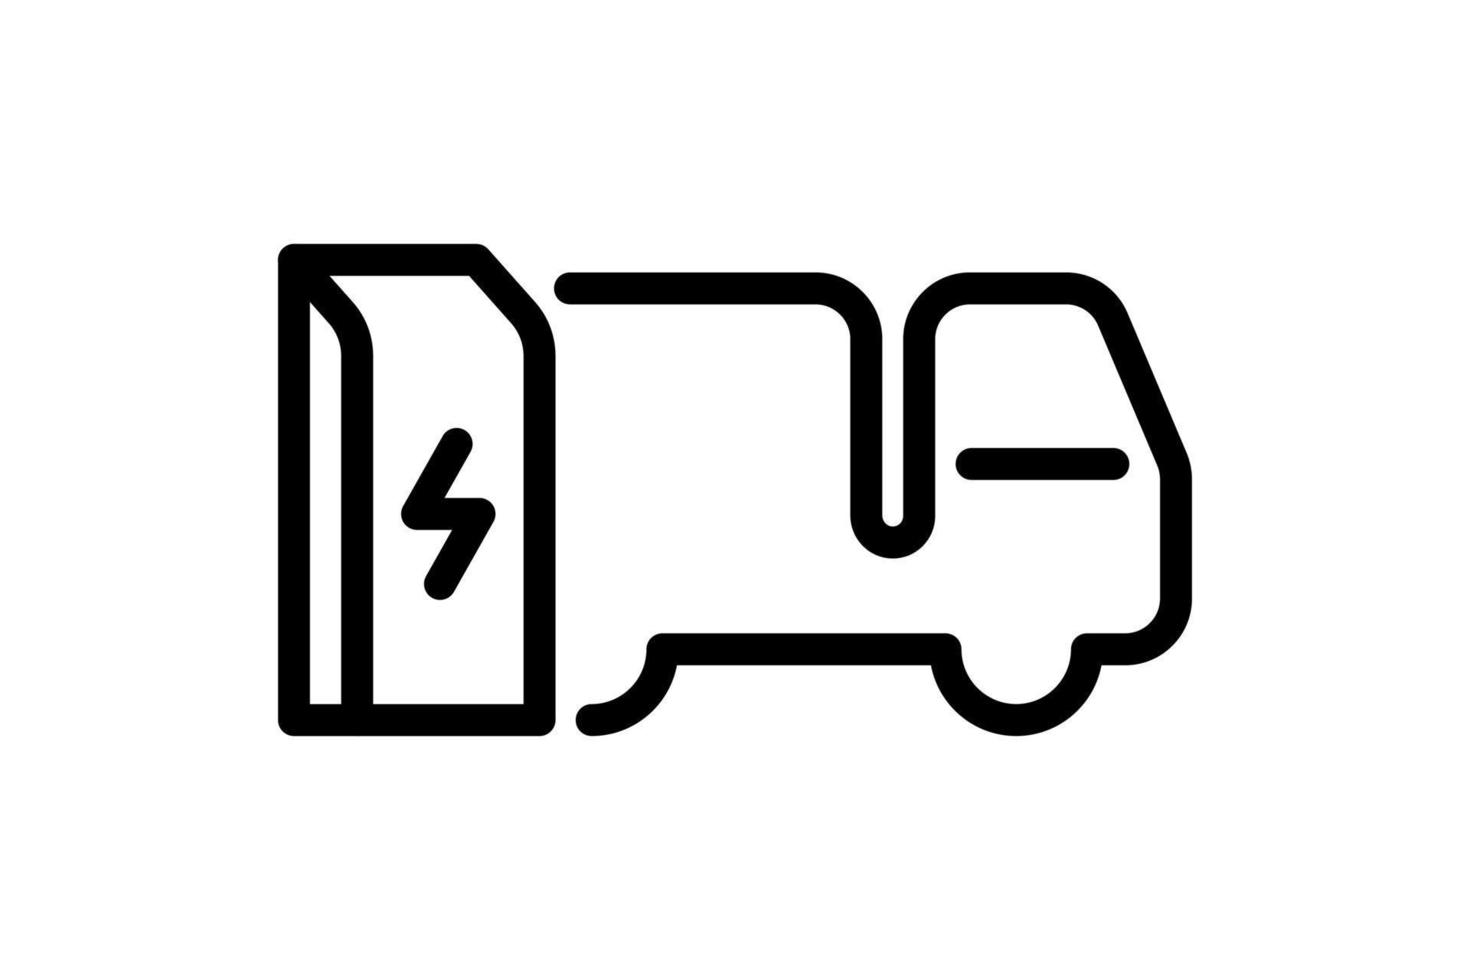 elektrische vrachtwagen opladen in het lineaire pictogram van het laadstation. elektrische vrachtwagen energie lading zwart symbool. milieuvriendelijk elektrisch voertuig opladen teken. vector batterij aangedreven ev transport eps logo